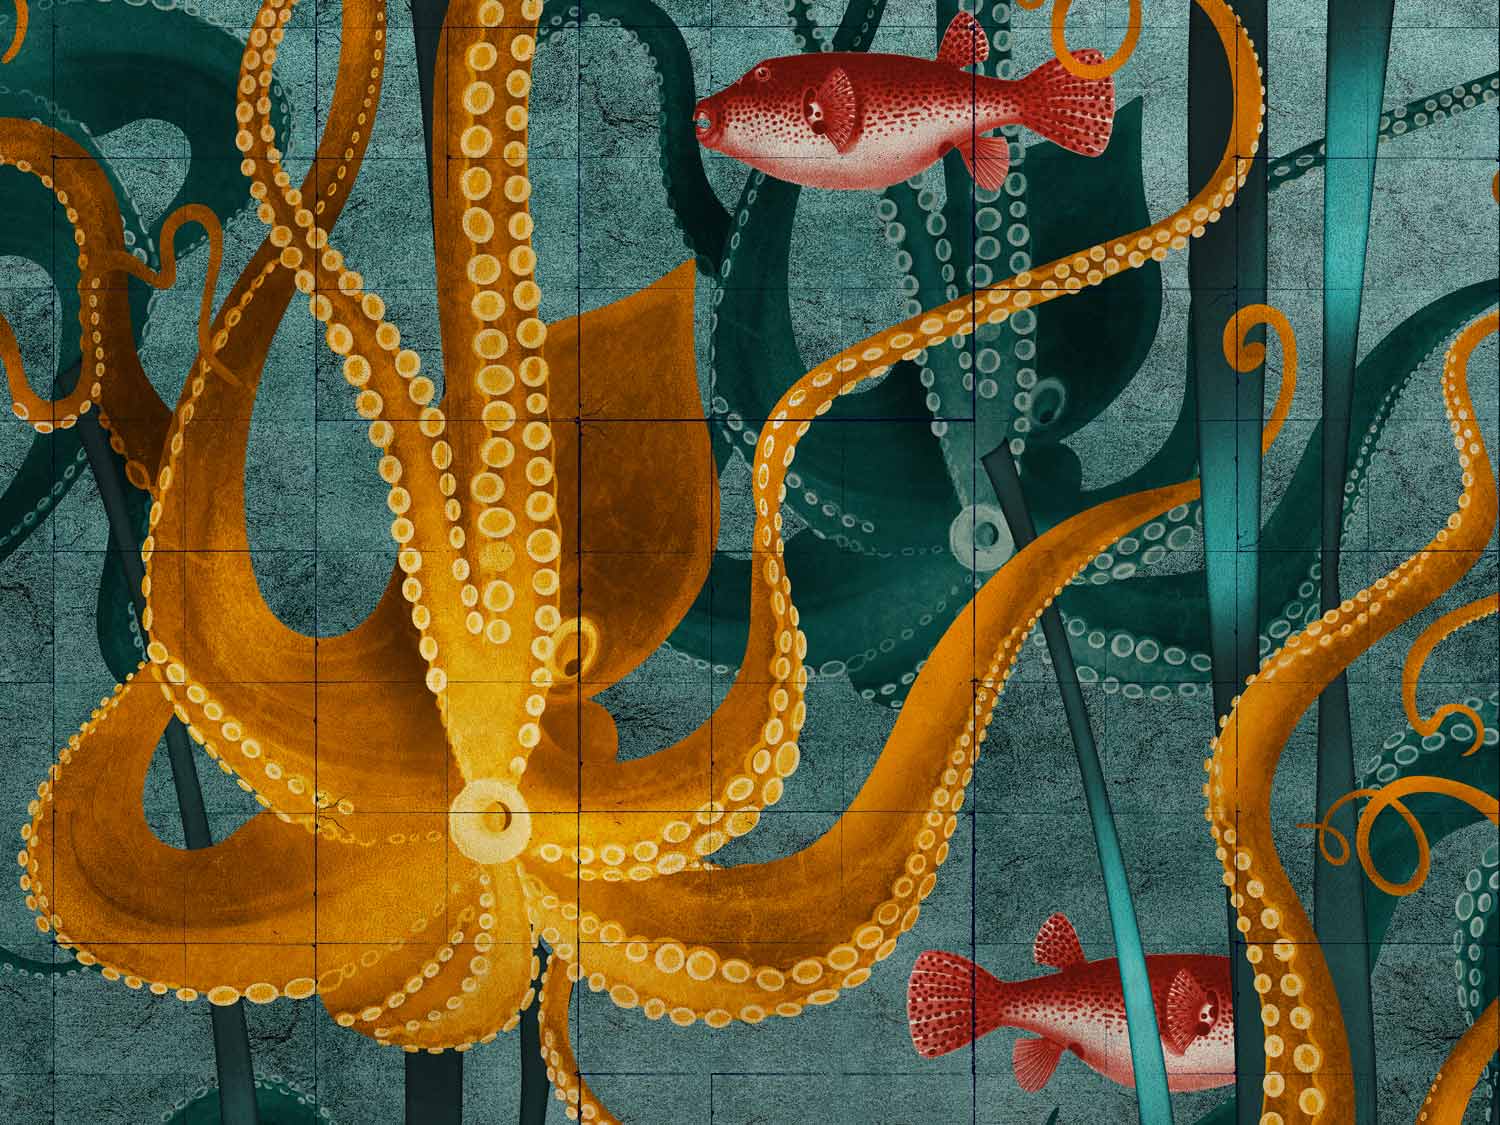 Kraken design in Golden colourway detailed crop of artwork